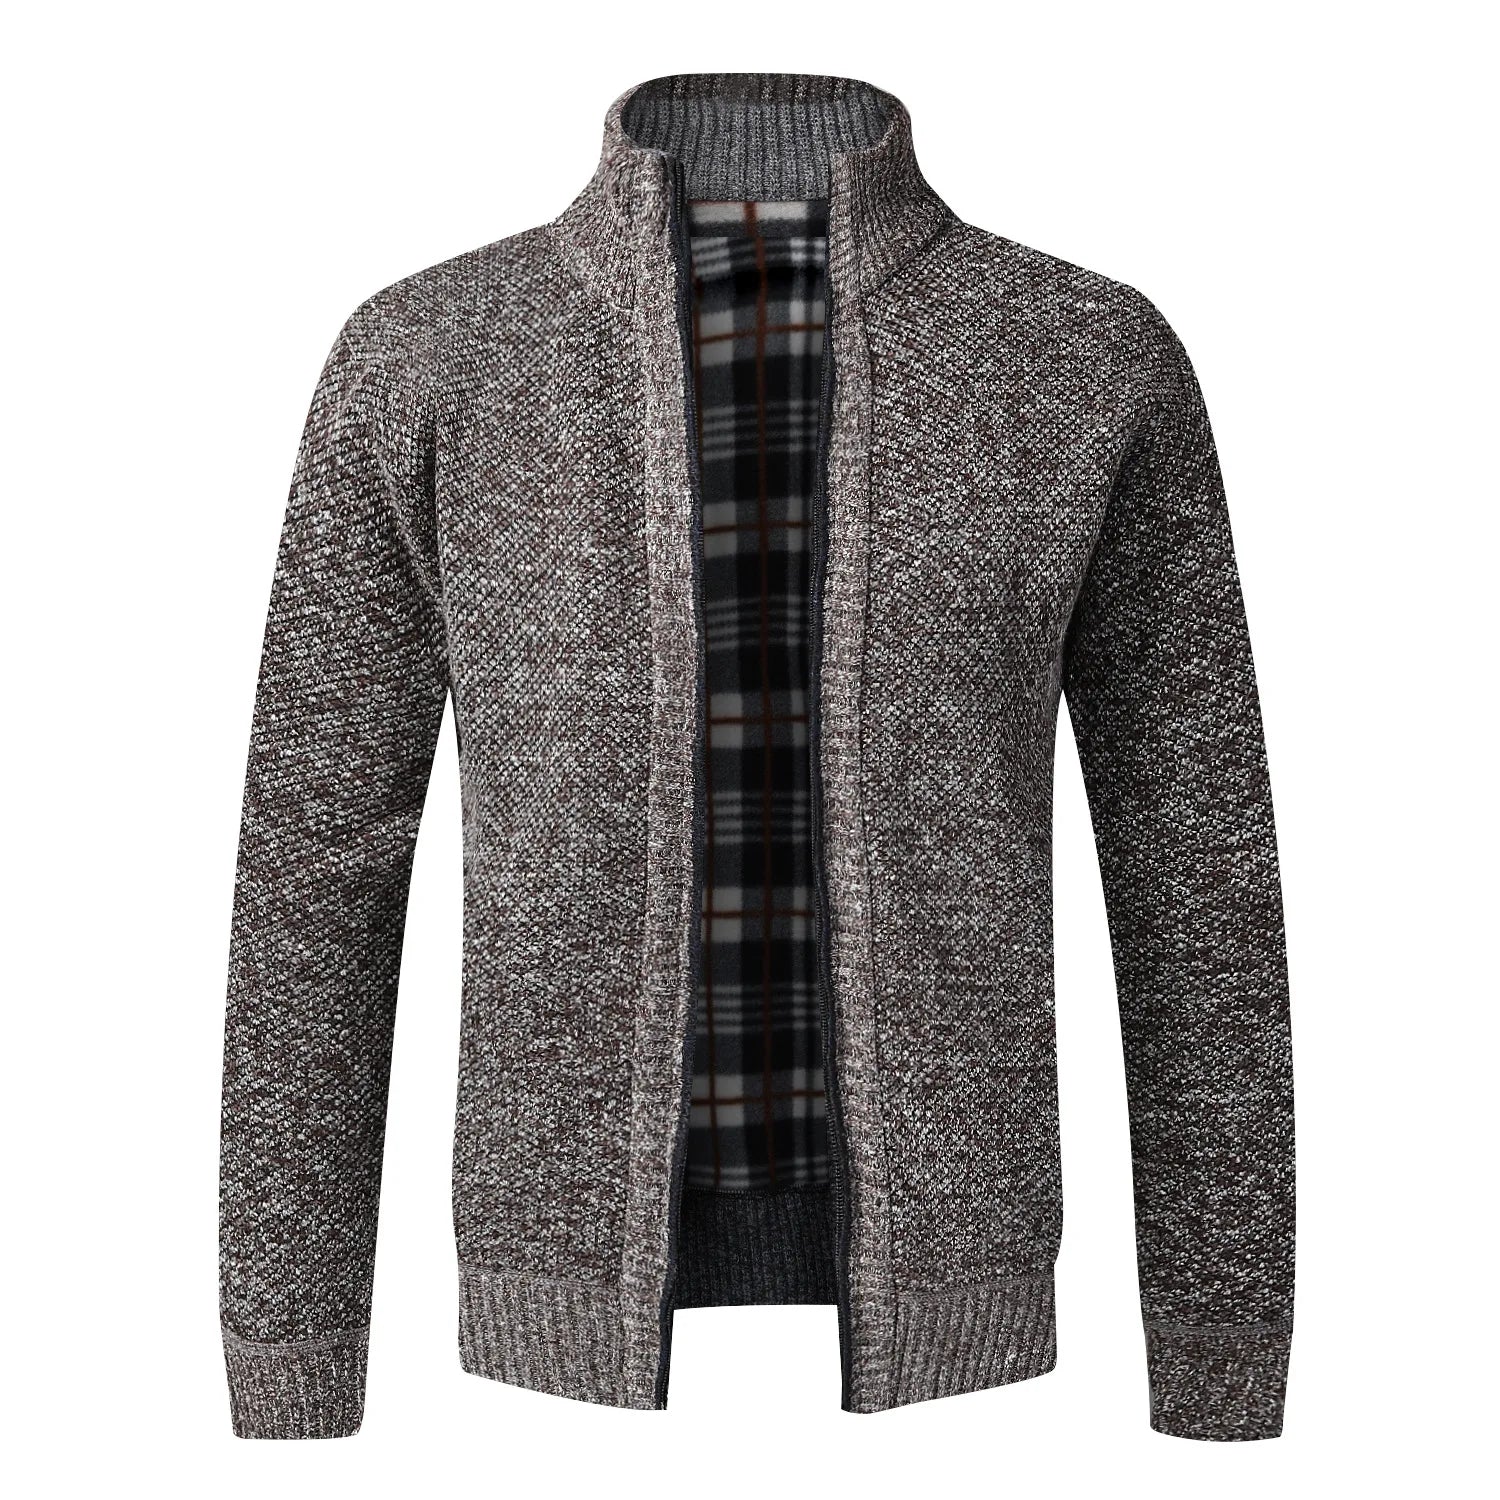 TEEK - Warm Knitted Zipper Sweater Jacket JACKET theteekdotcom coffee US XS | Tag M 